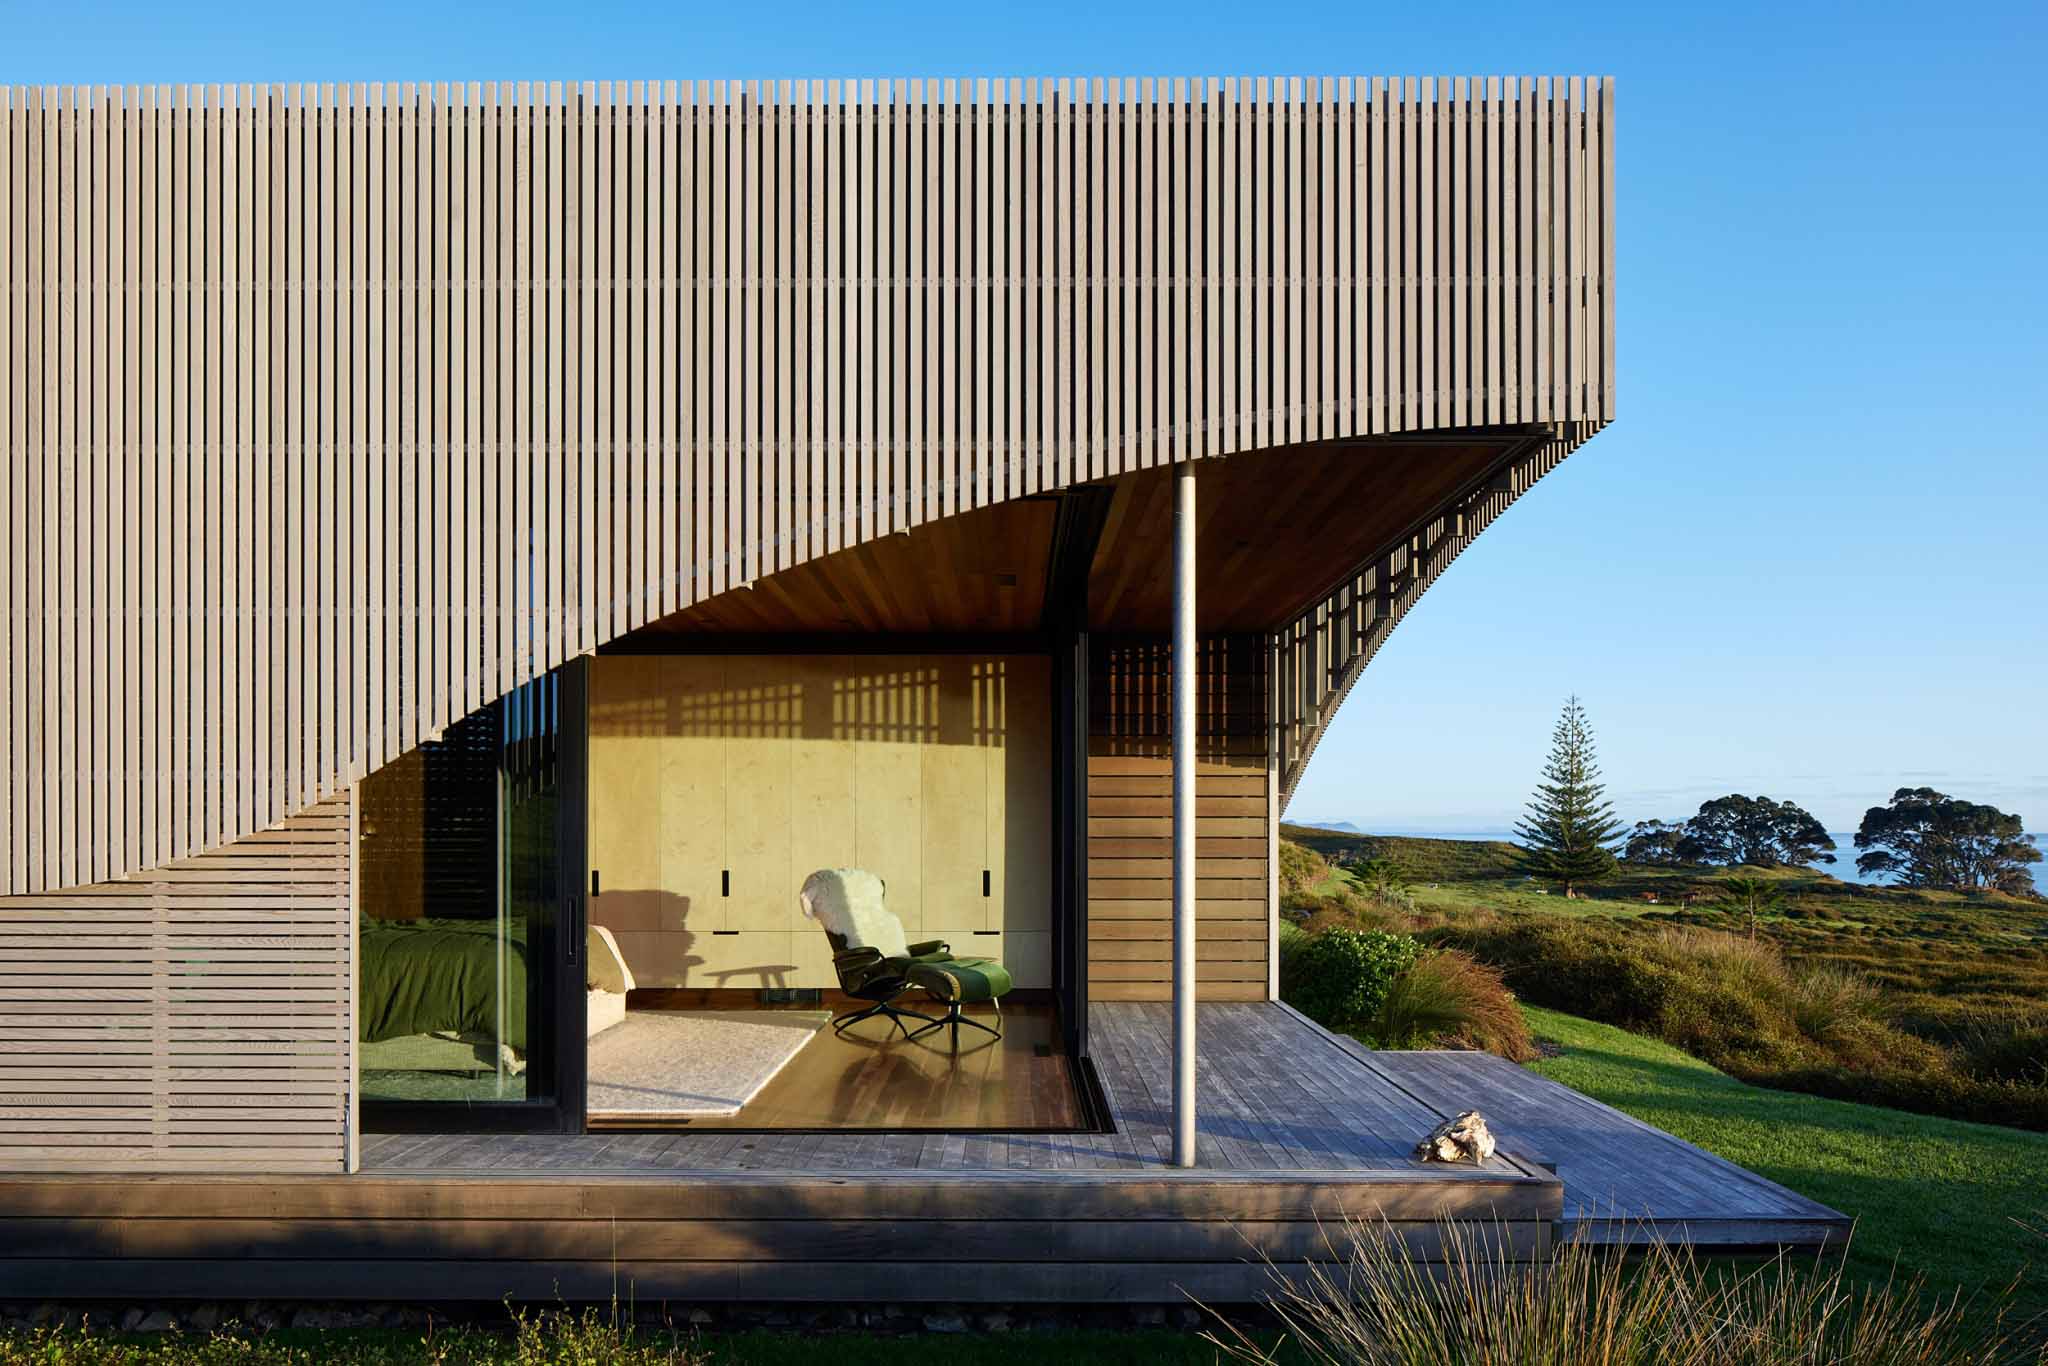 度假屋设计,住宅设计案例,Herbst Architects,新西兰,国外住宅设计案例,海景度假屋,住宅设计,原木色